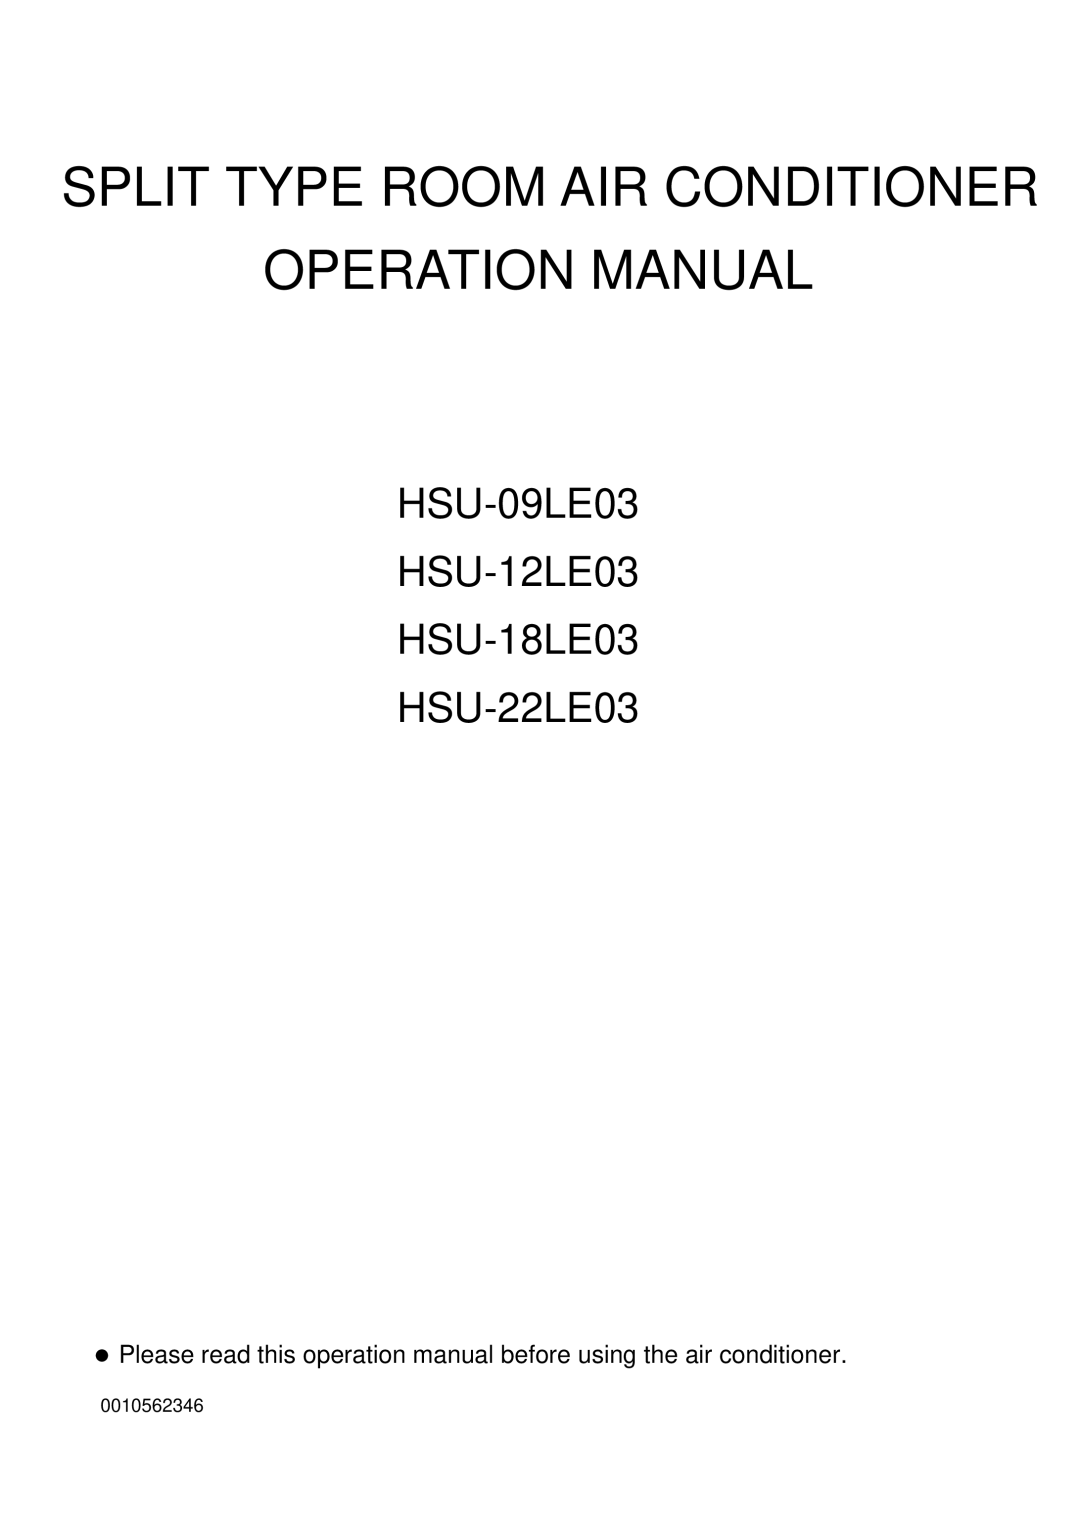 Haier operation manual HSU-09LE03 HSU-12LE03 HSU-18LE03 HSU-22LE03, Split Type Room Air Conditioner 